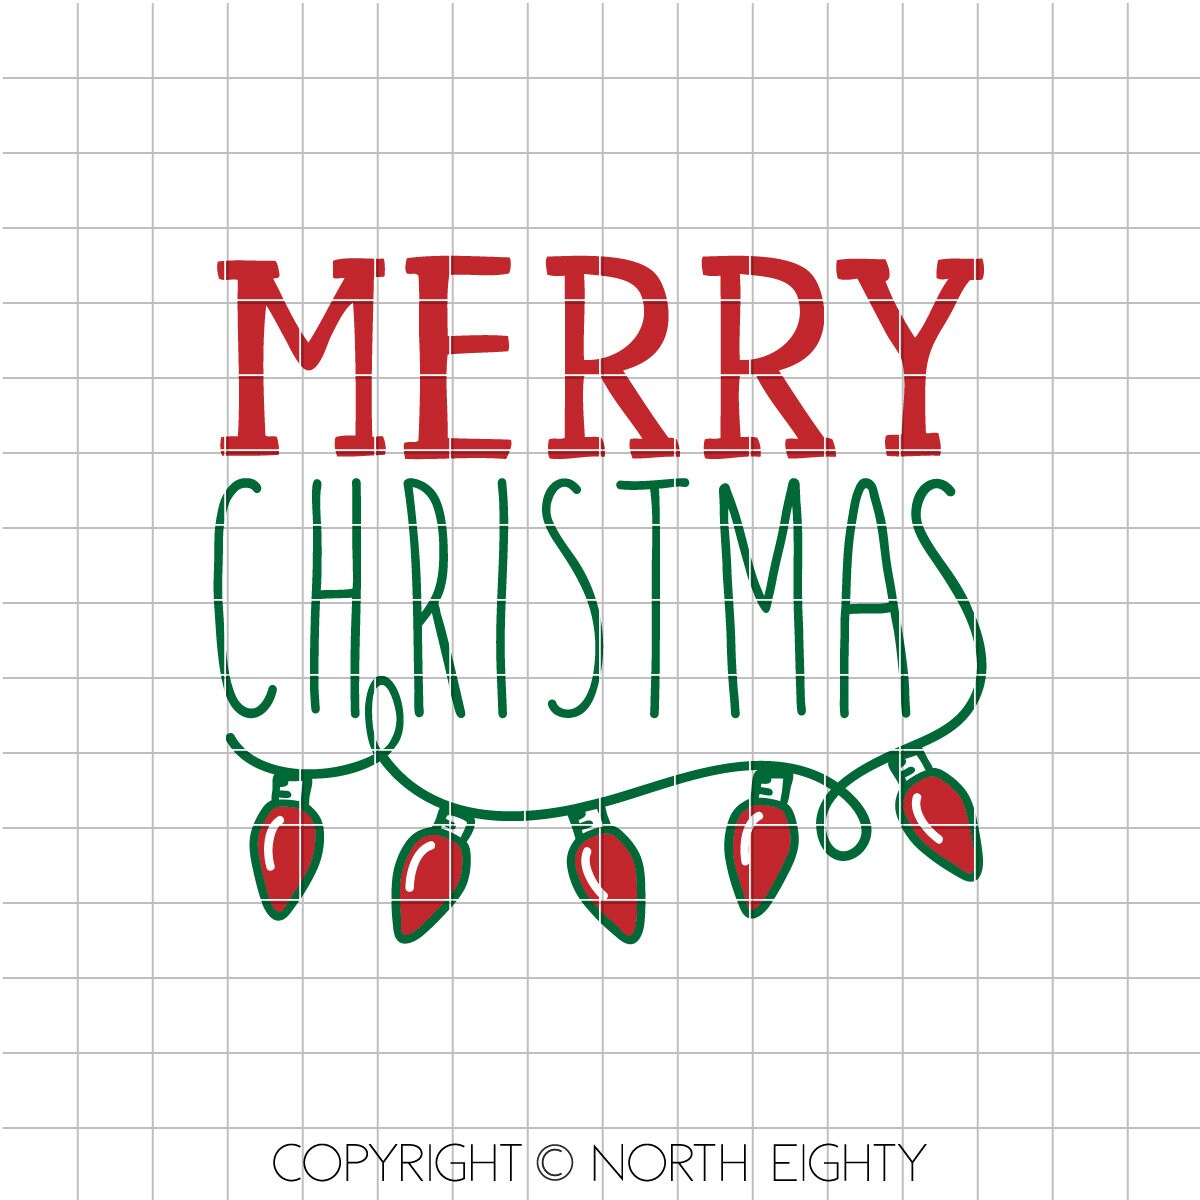 Merry Christmas svg - Christmas lights cut file - Christmas lights bulb dxf - Merry Christmas Lights cut file - Christmas svg - vector art